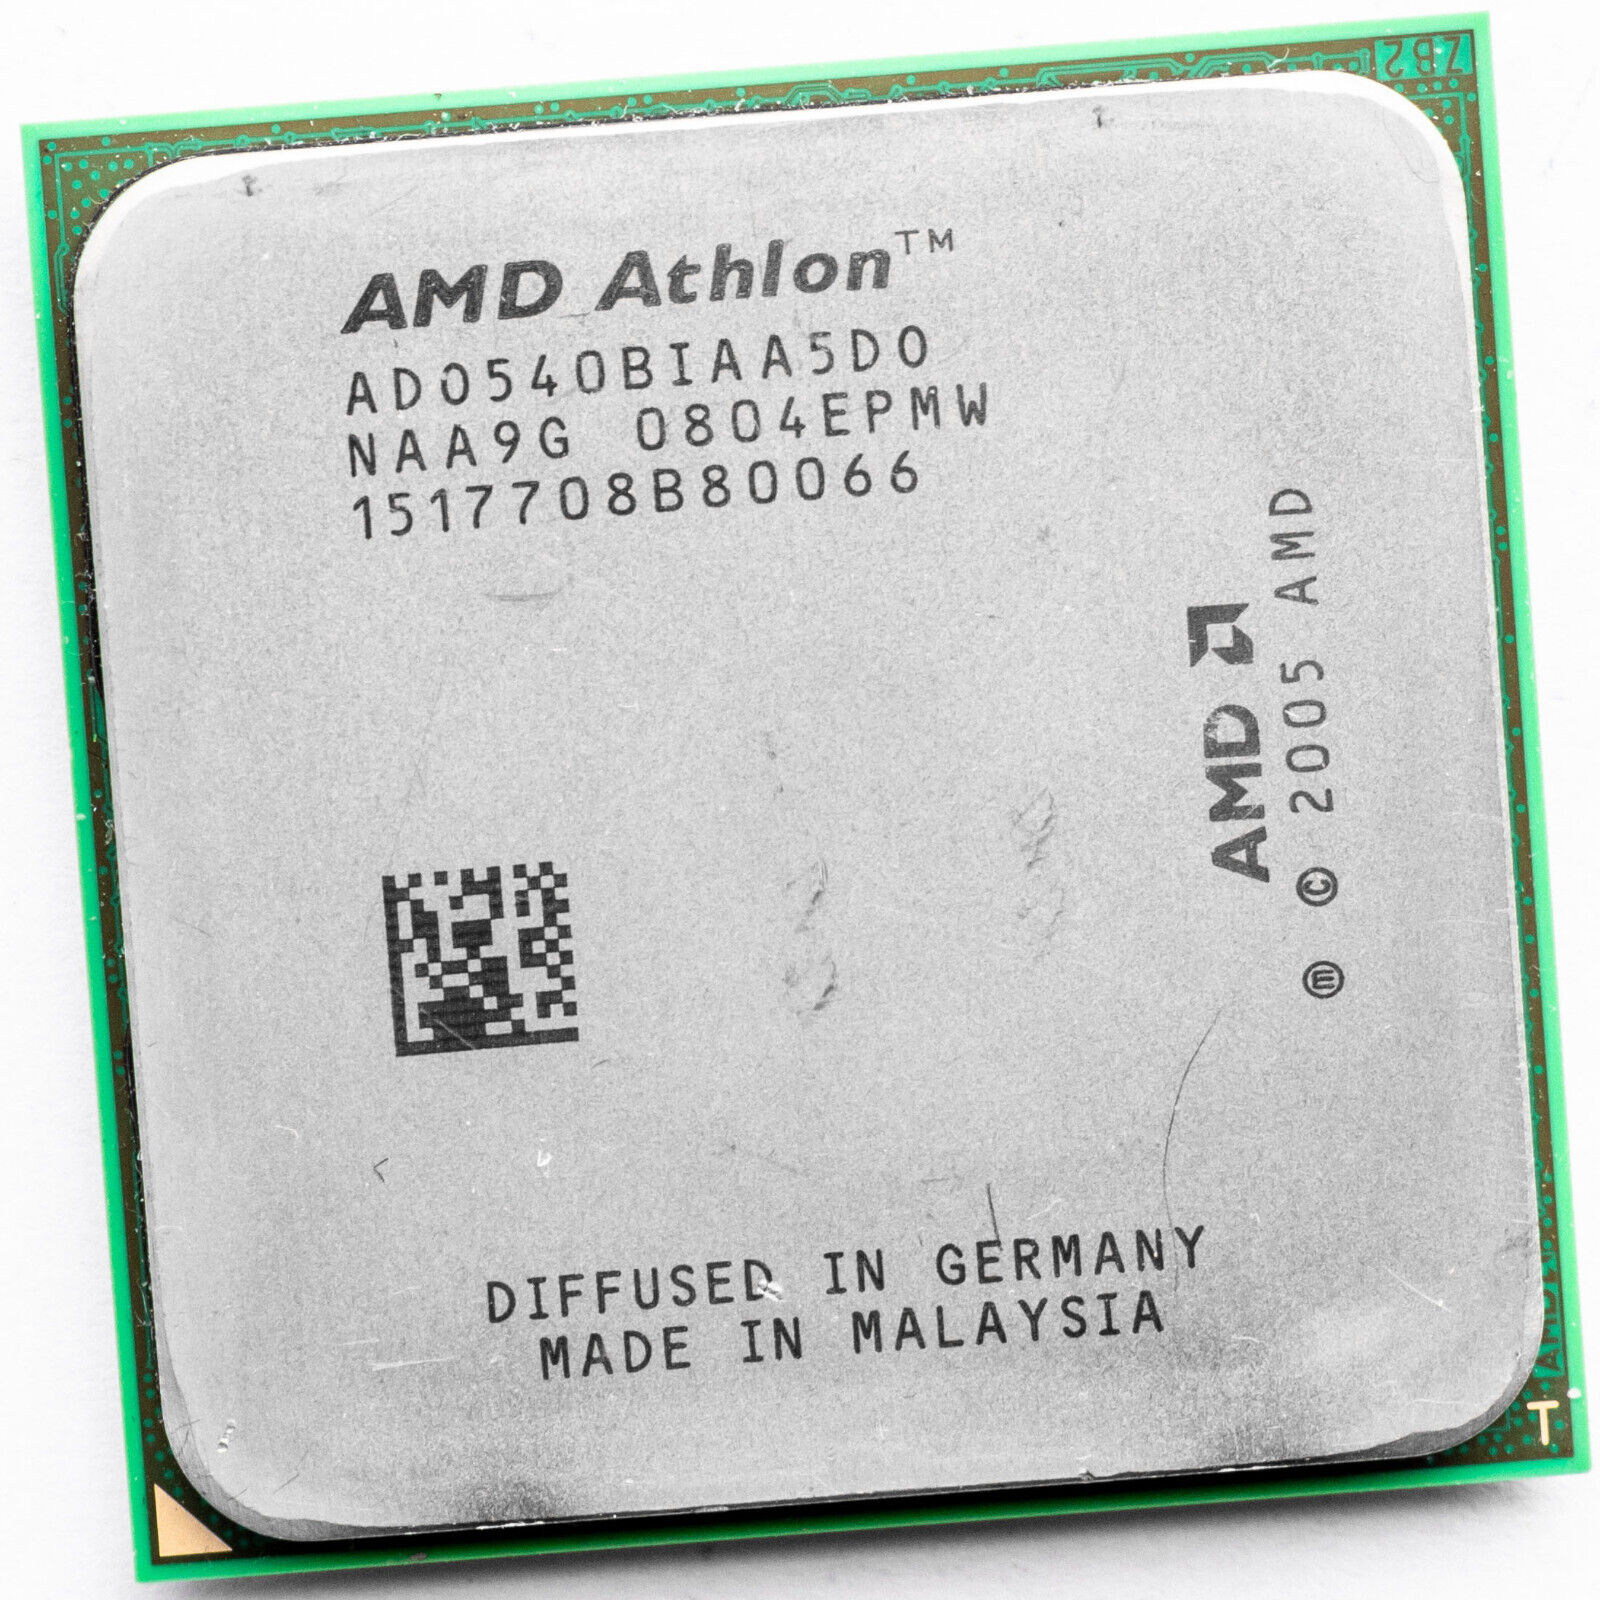 AMD Athlon X2 5400B ADO540BIAA5DO AM2 2.8GHz Dual Core Processor 1MB 65W